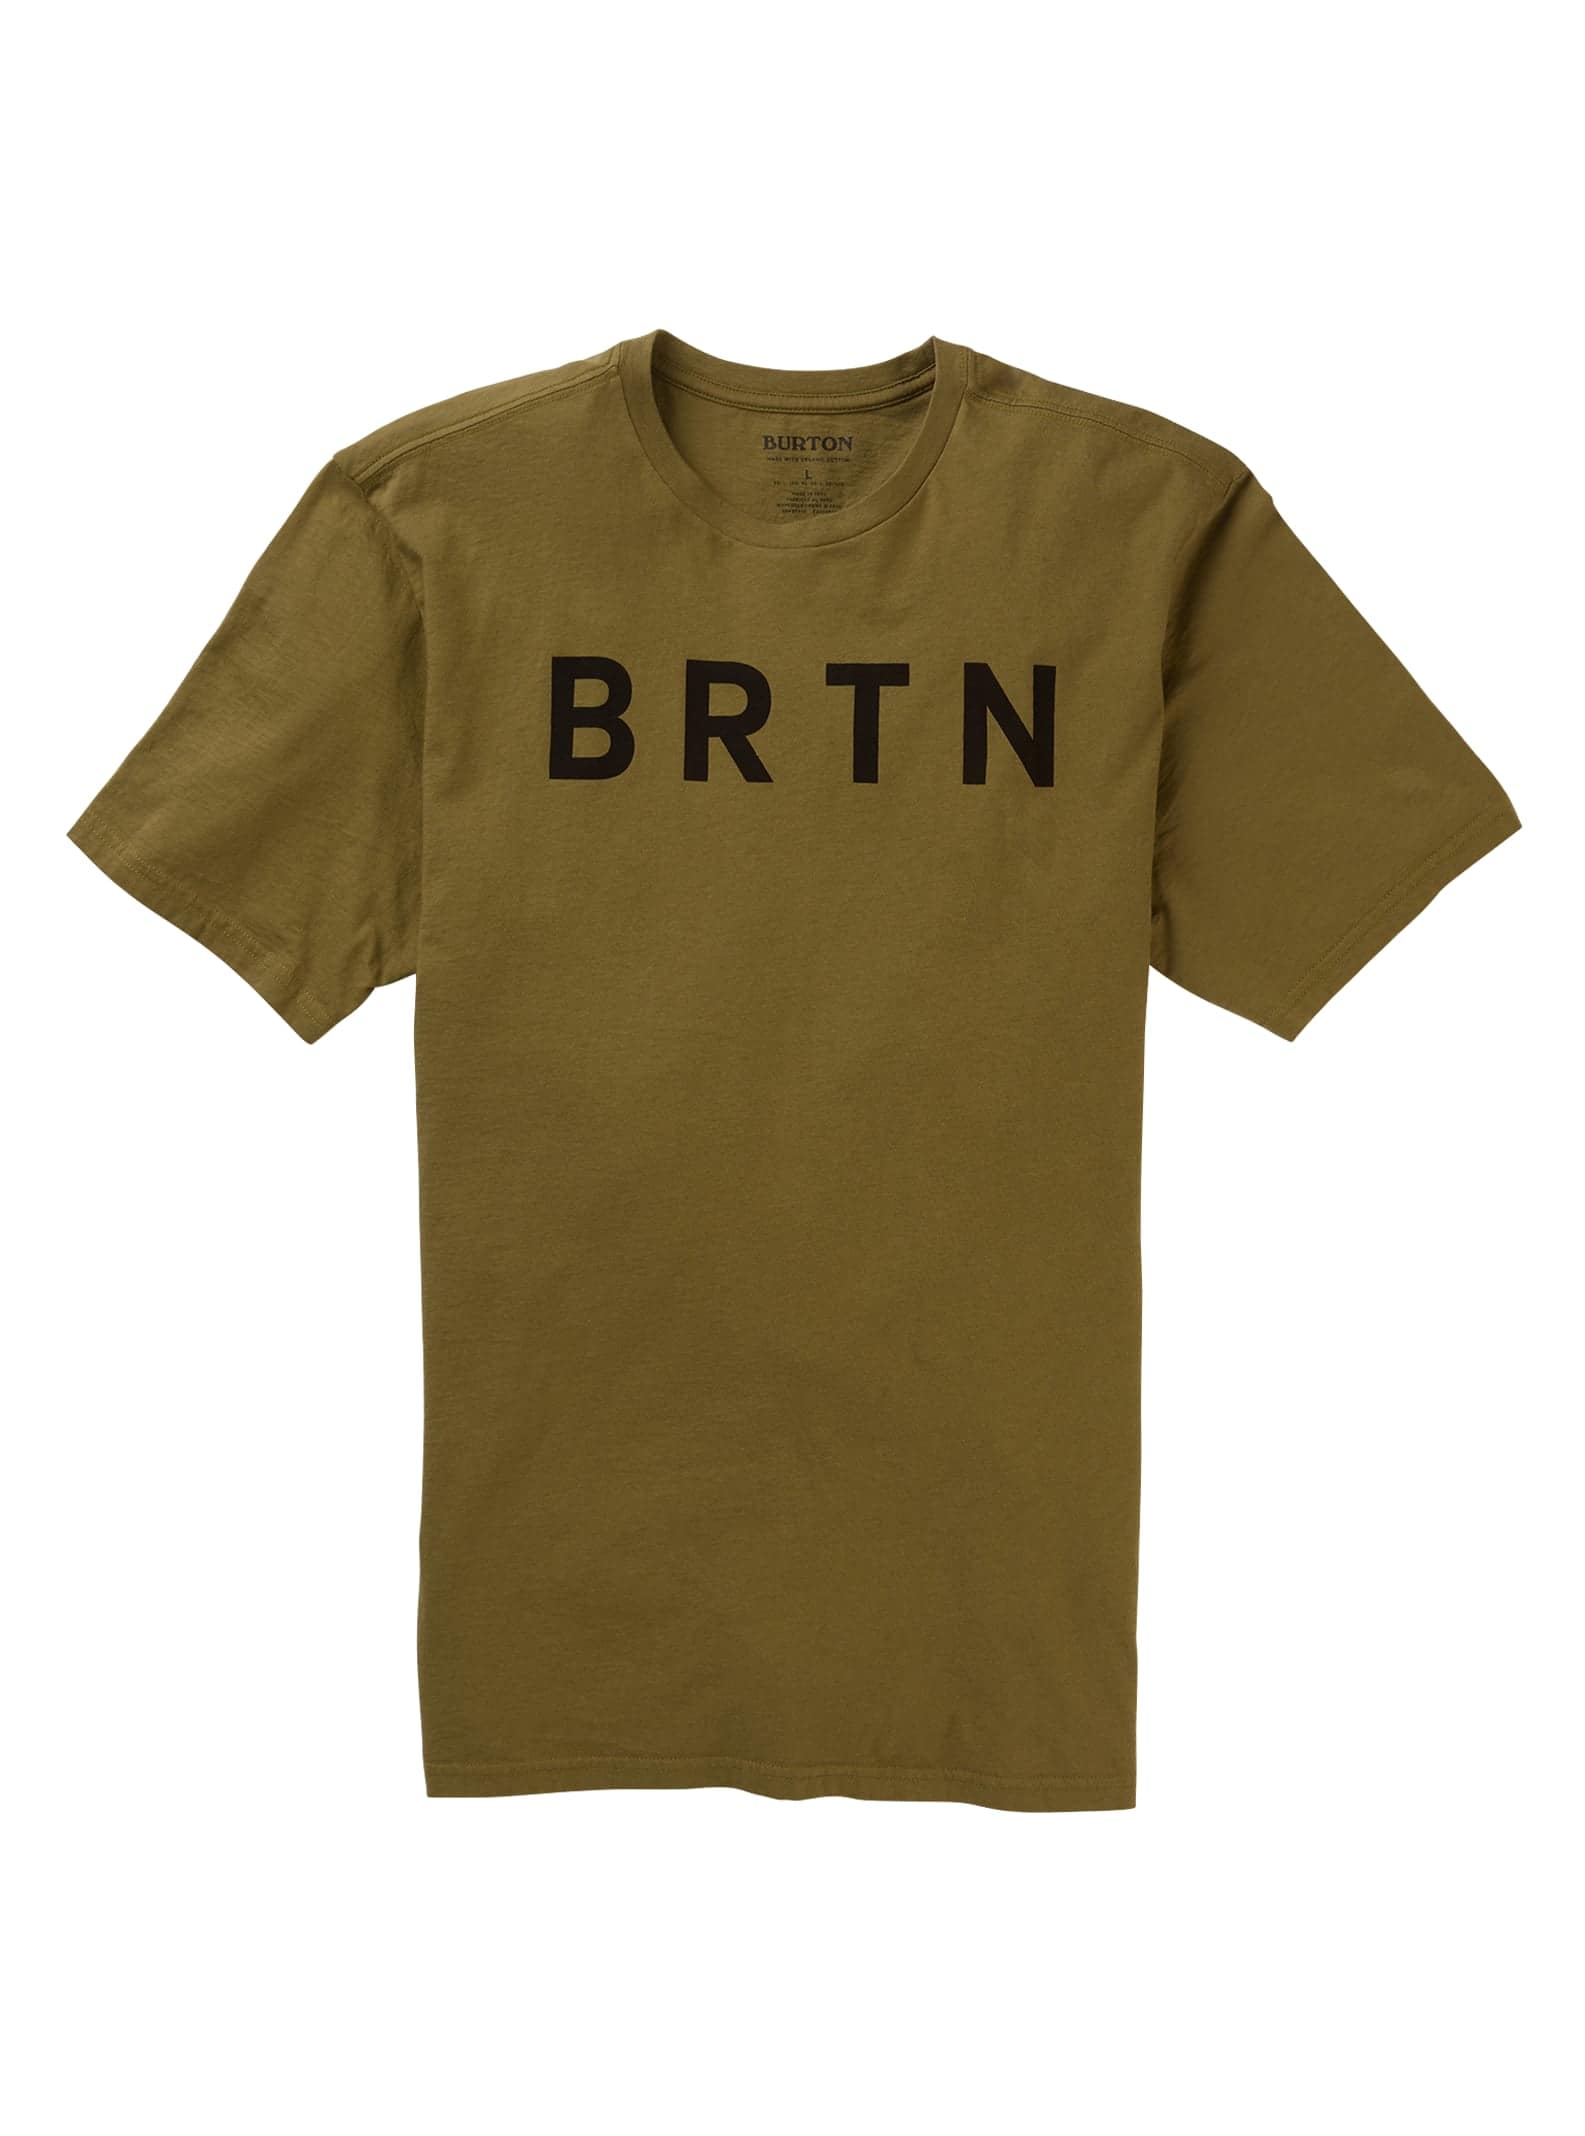 Burton BRTN Short Sleeve T-Shirt, Martini Olive, S